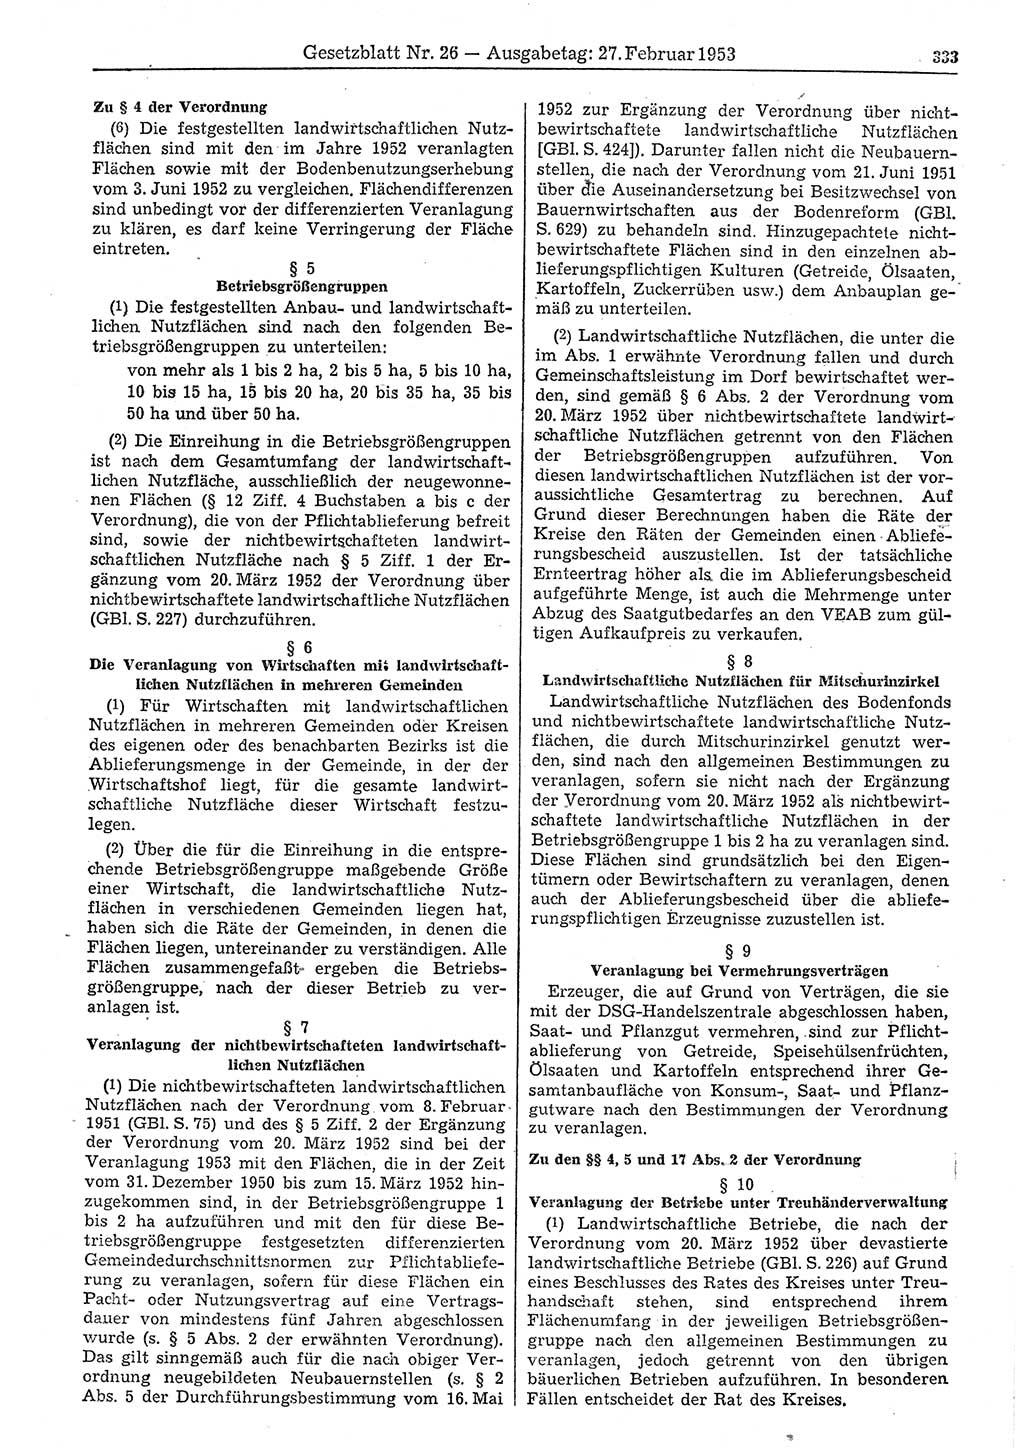 Gesetzblatt (GBl.) der Deutschen Demokratischen Republik (DDR) 1953, Seite 333 (GBl. DDR 1953, S. 333)